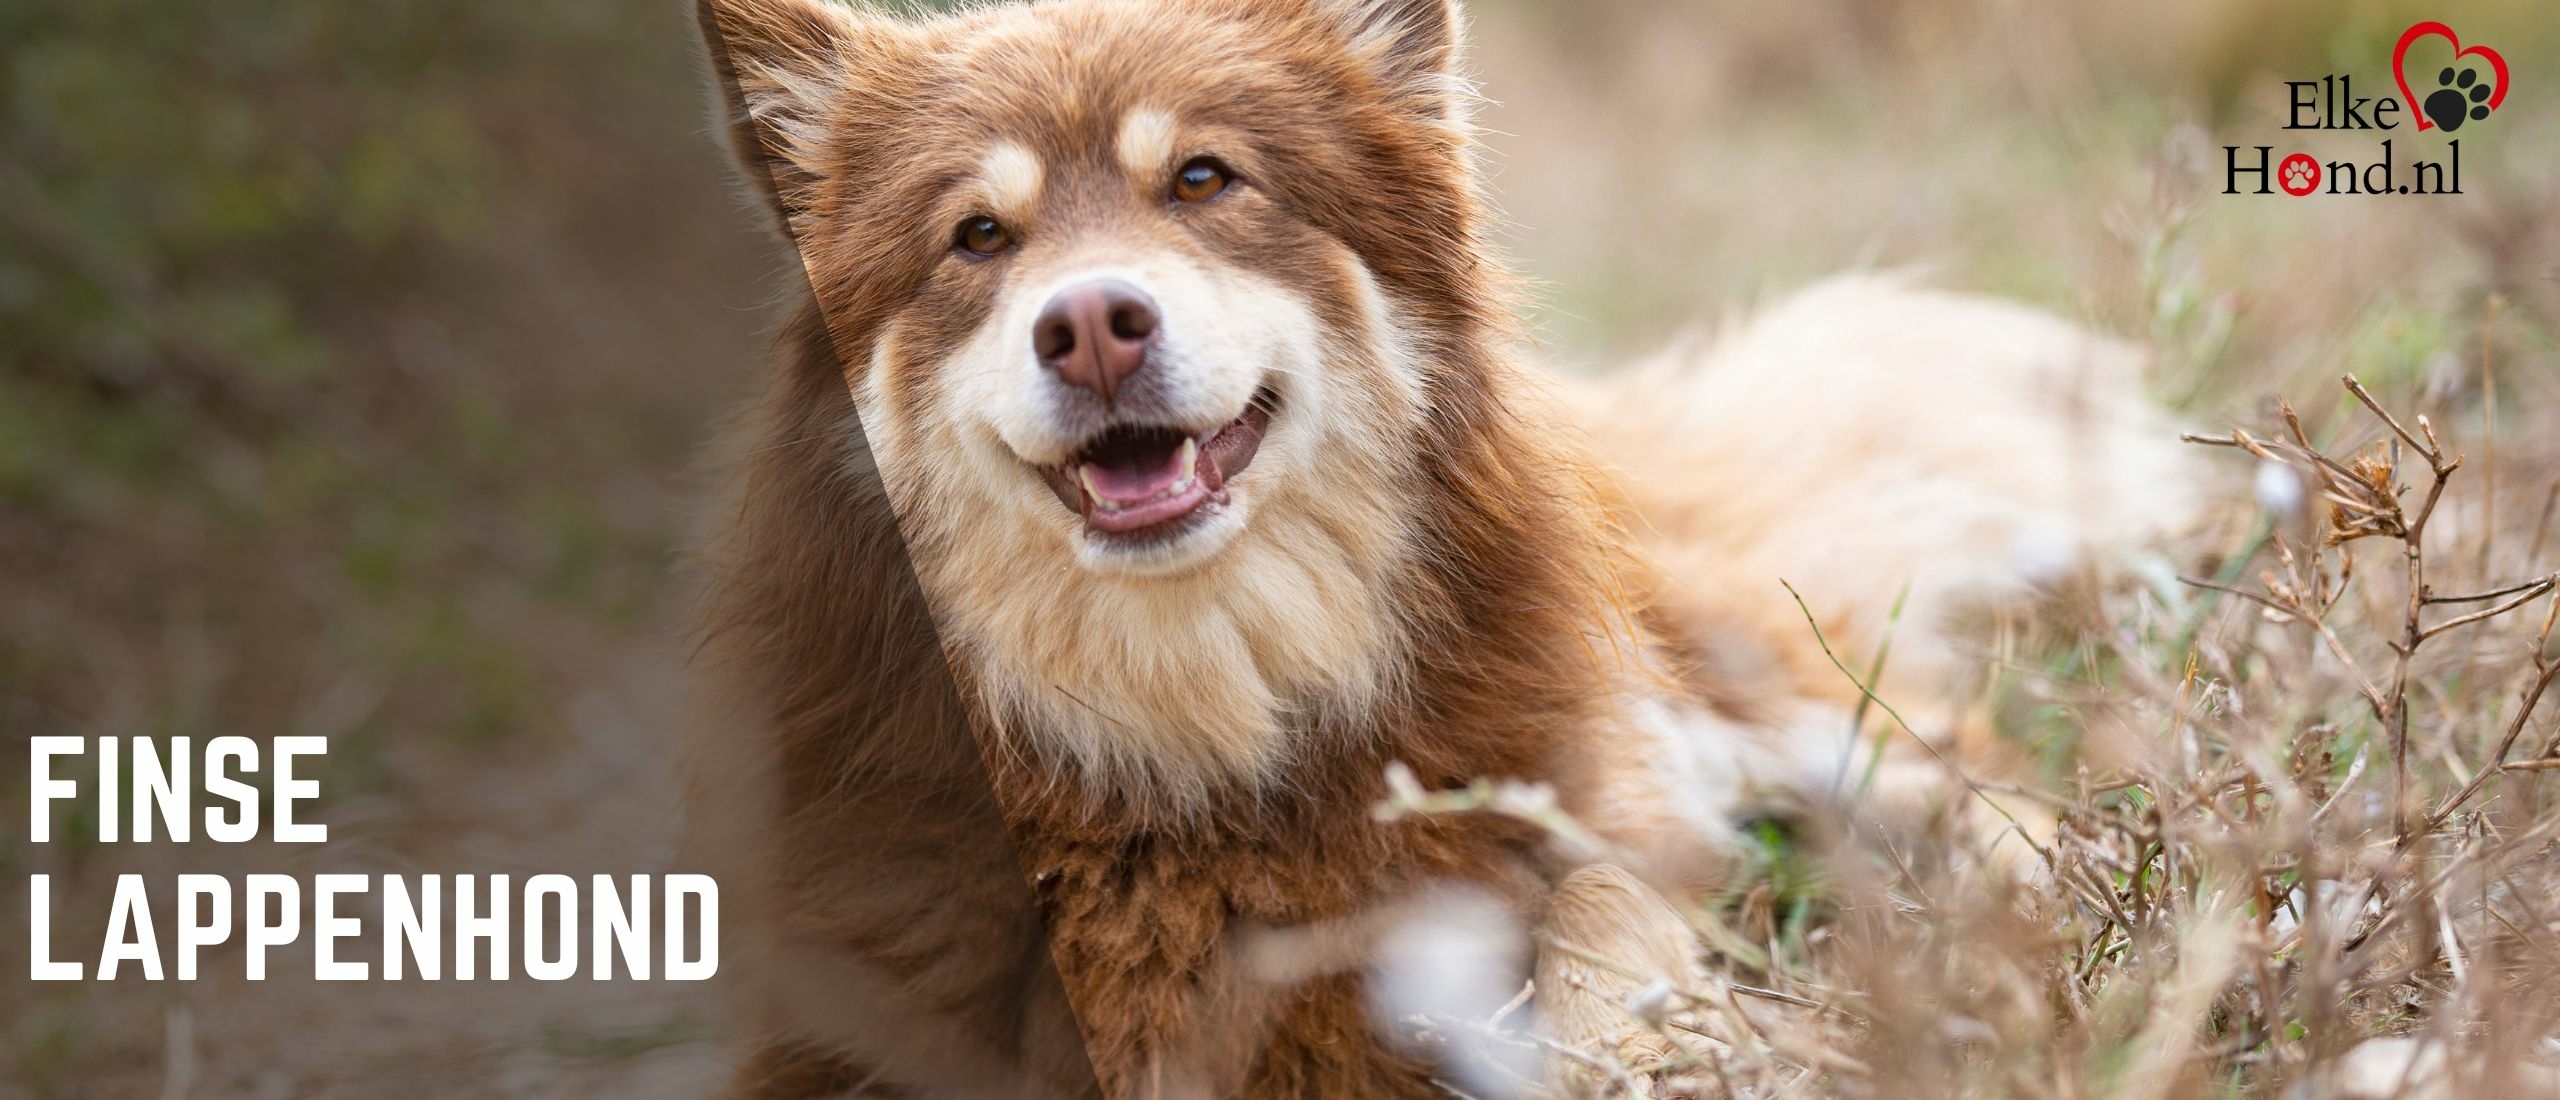 De Finse Lappenhond: Een veelzijdig en charmant hondenras